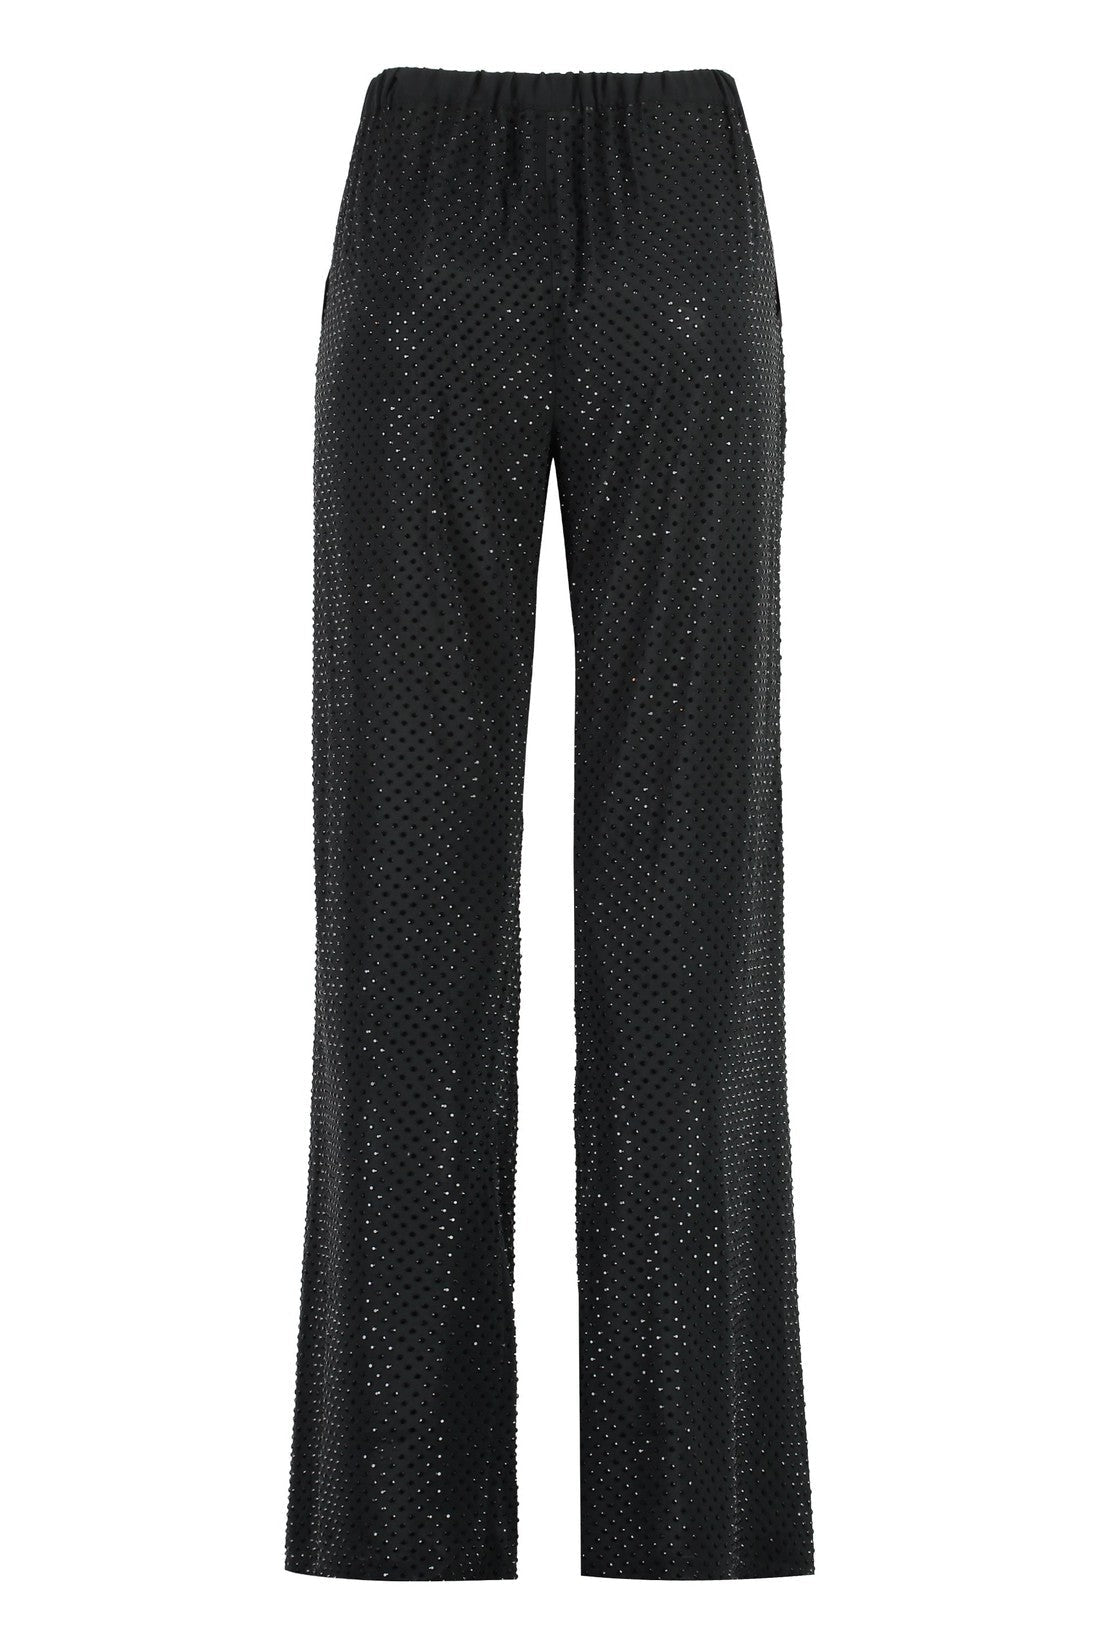 Parosh-OUTLET-SALE-Petal trousers with rhinestones-ARCHIVIST